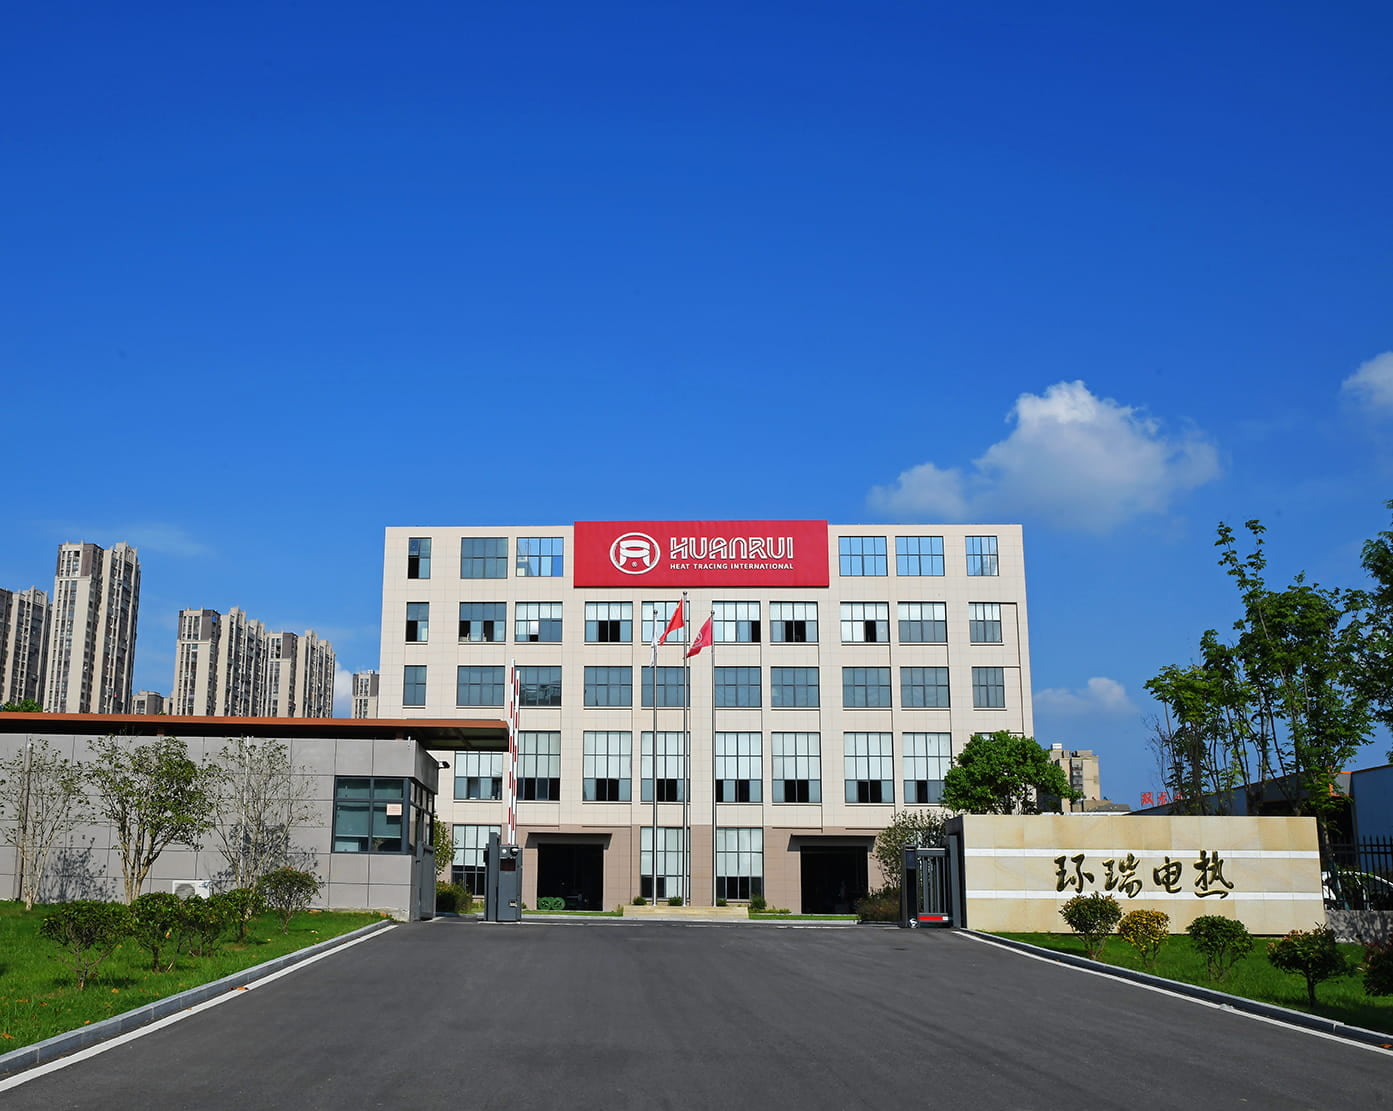 Das elektrische Heizband von Huanrui wird zur Begleitheizung und Isolierung von Geräten im Bereich der Spandex-Fabrik Hyosung in ausländischem Besitz verwendet
        